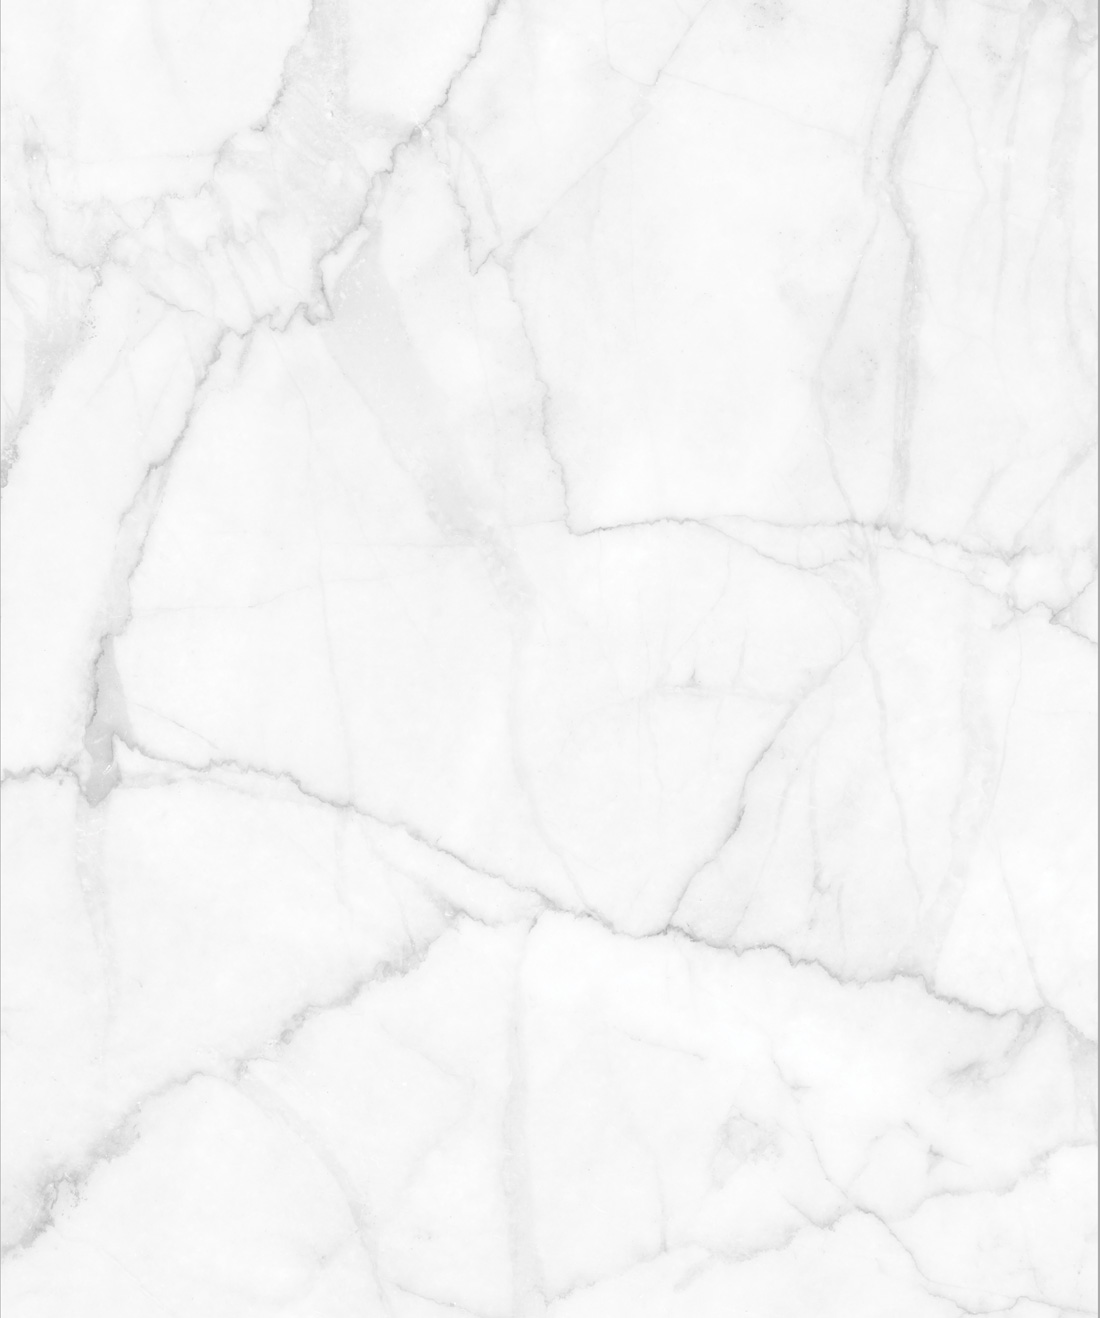 Giấy dán tường đá Marble sang trọng có thể mang lại cho ngôi nhà của bạn vẻ đẹp đẳng cấp. Với màu trắng tinh khiết và vân đá mịn màng, sản phẩm này không chỉ đem lại sự sang trọng cho căn phòng của bạn, mà còn rất chắc chắn và dễ dàng sử dụng. Hãy xem hình ảnh để hiểu rõ hơn về sự đẳng cấp của giấy dán tường đá Marble. 